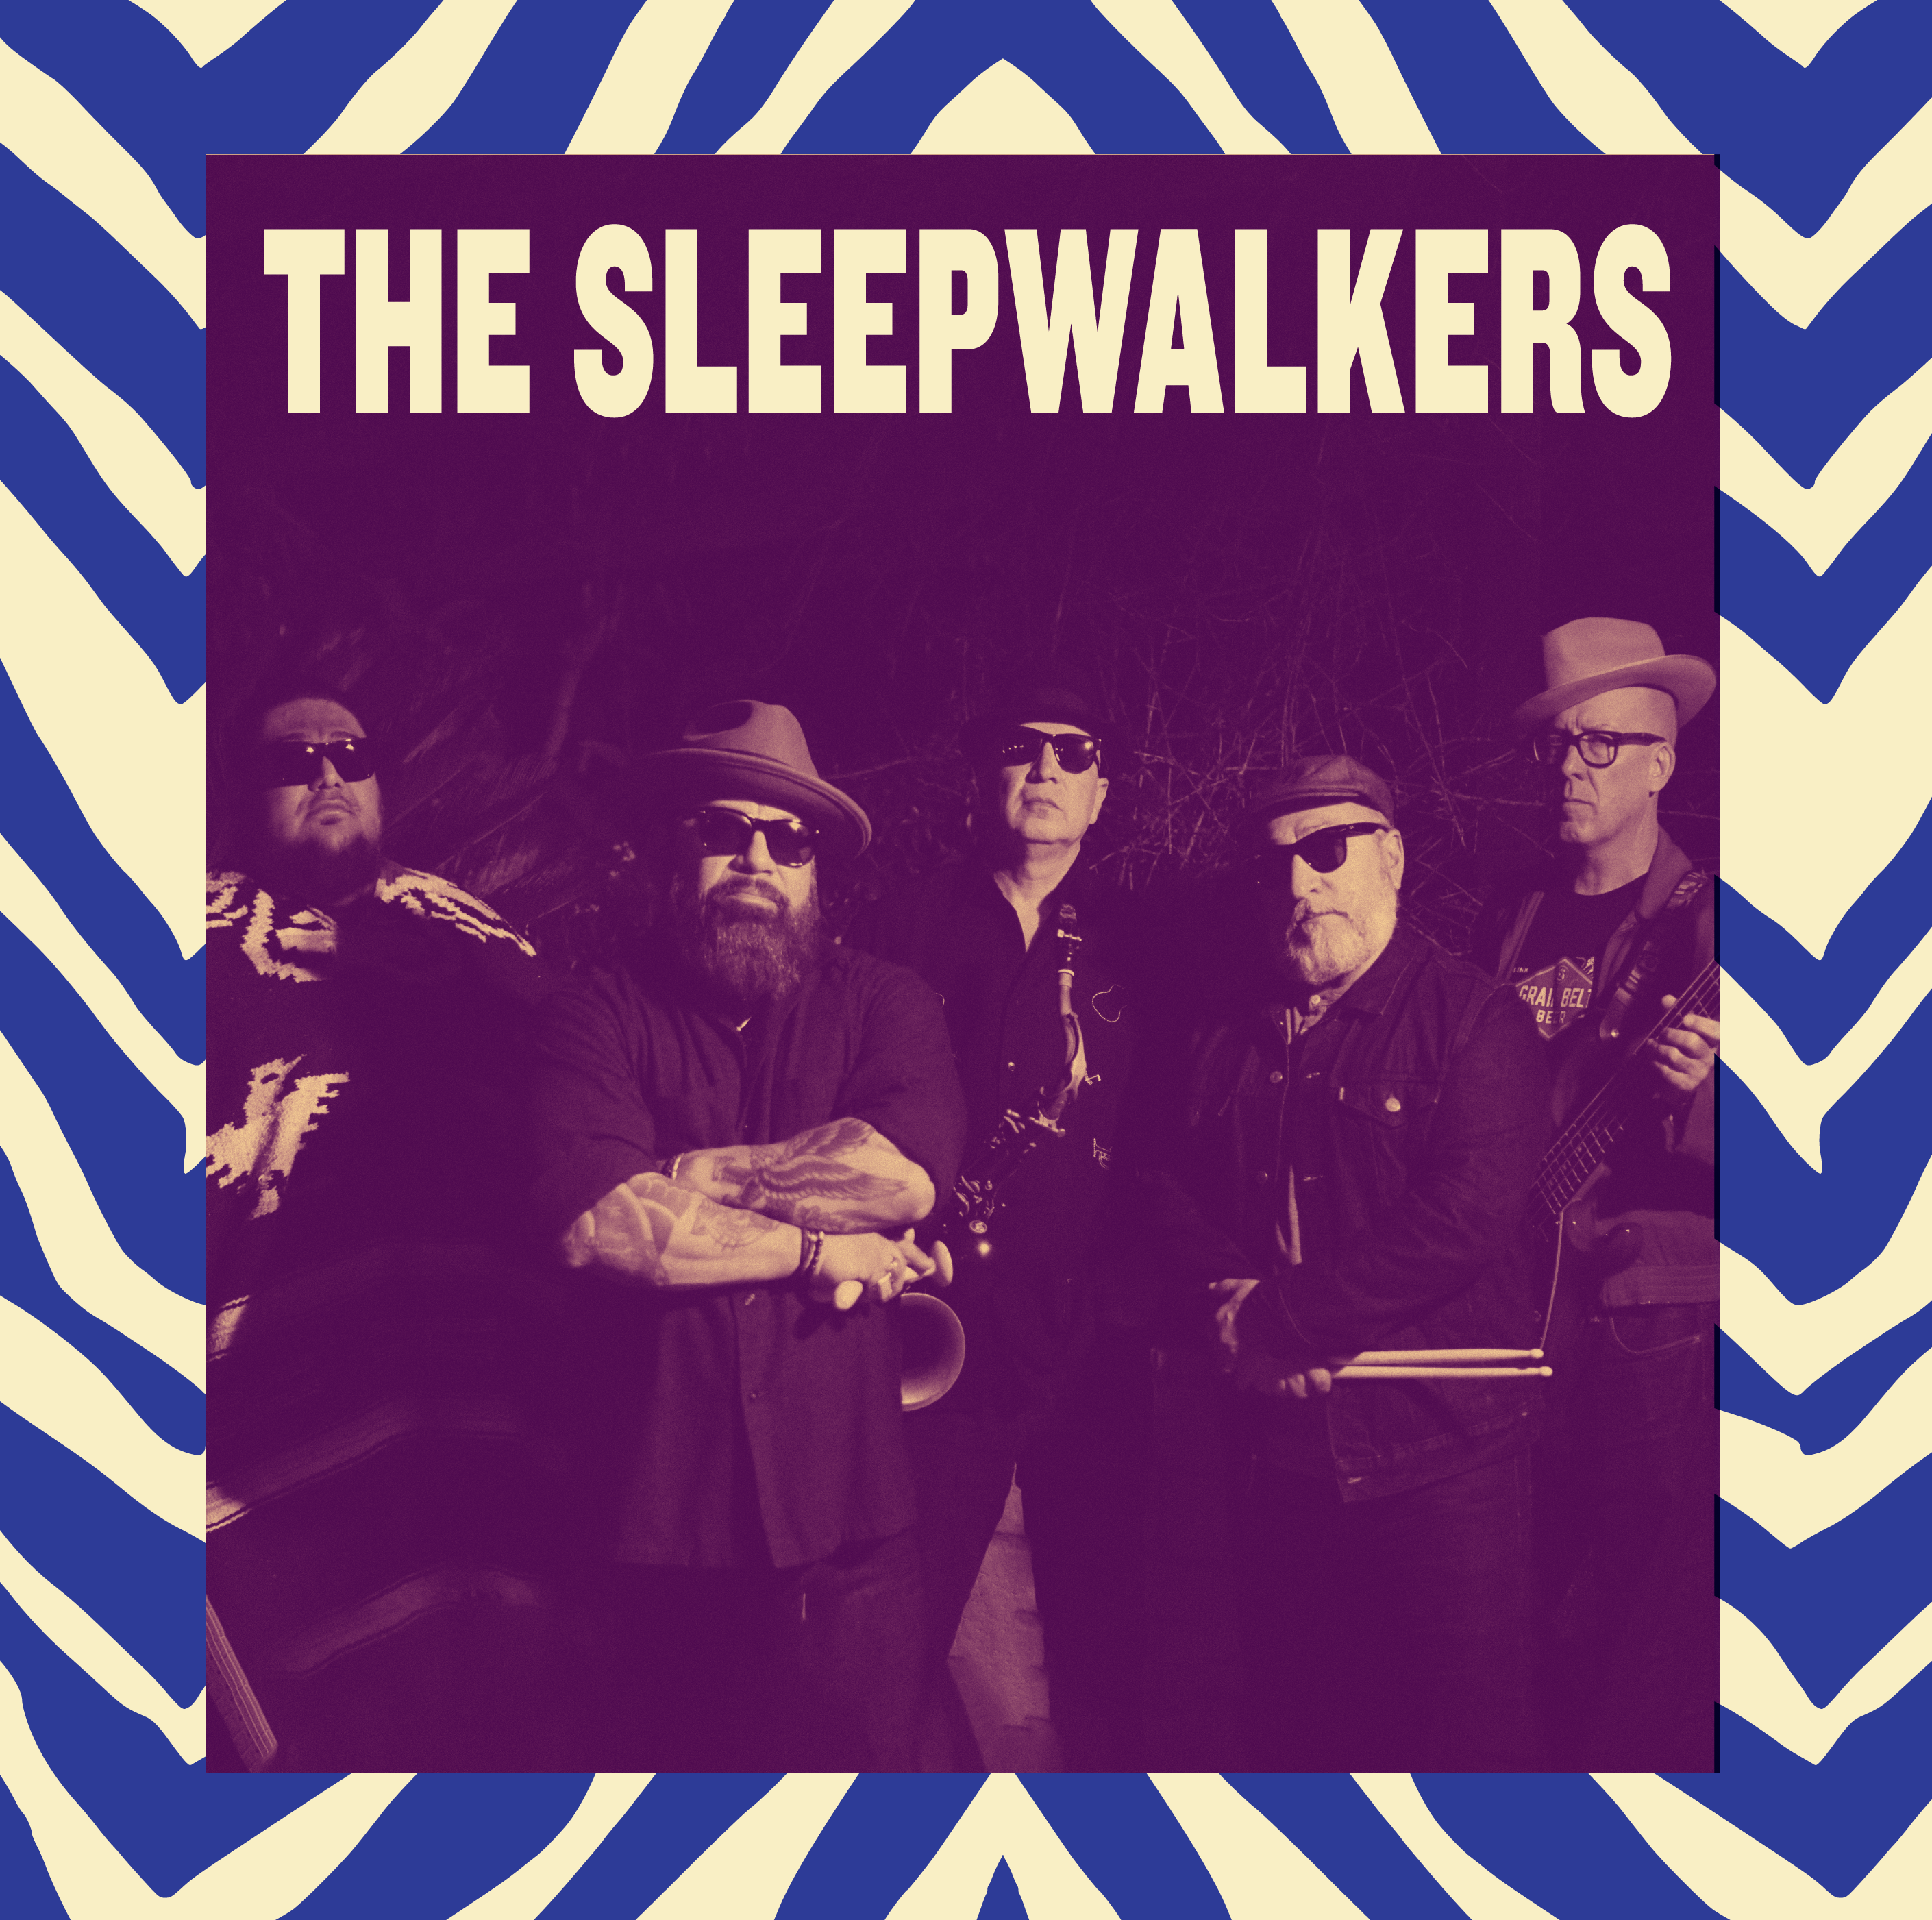 THE SLEEPWALKERS